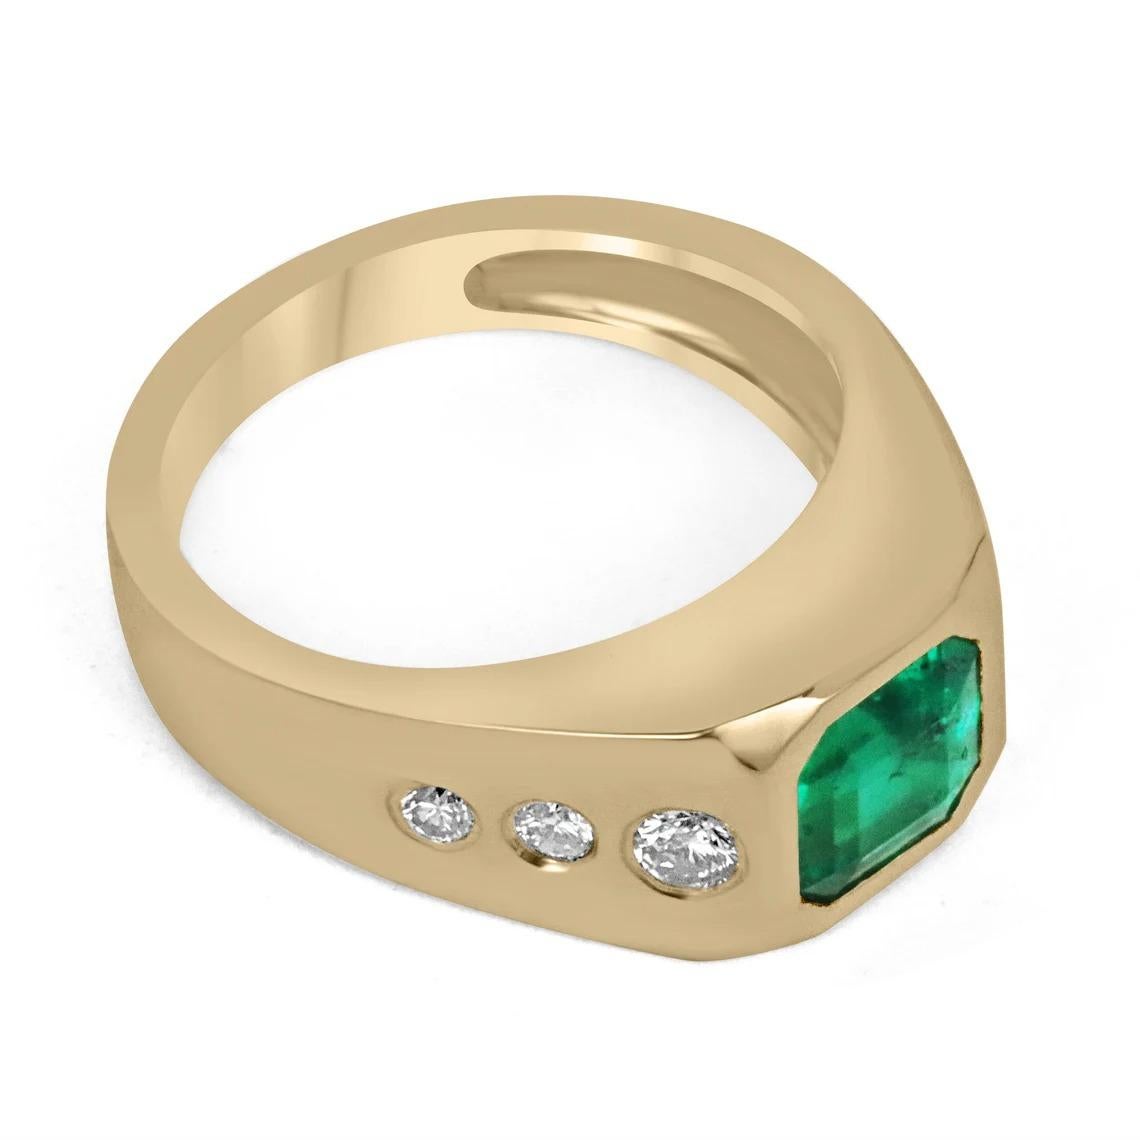 Ein anspruchsvoller Unisex-Ring mit Smaragd und Diamant. Dieses elegante Stück zeichnet sich durch einen bemerkenswerten natürlichen kolumbianischen Smaragd in AAA-Qualität im Asscher-Schliff aus. Dieser vollständig facettierte Edelstein zeigt einen